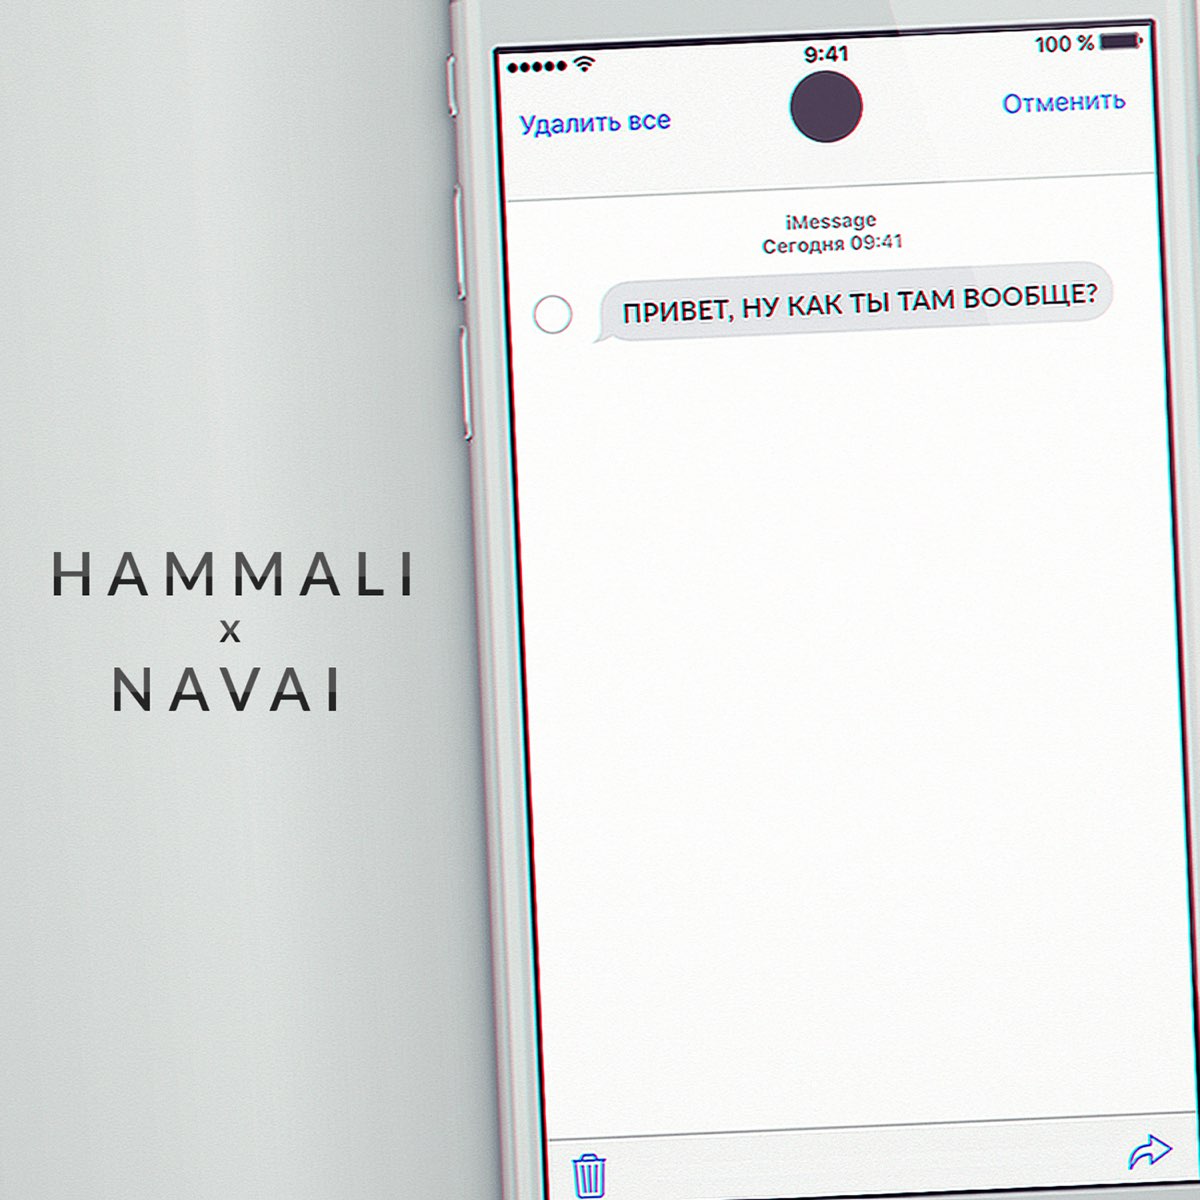 Я пишу привет ну как ты. Привет ну как ты там вообще. Как ты там вообще?. Привет, ну как ты там вообще HAMMALI & Navai. Привет ну как.